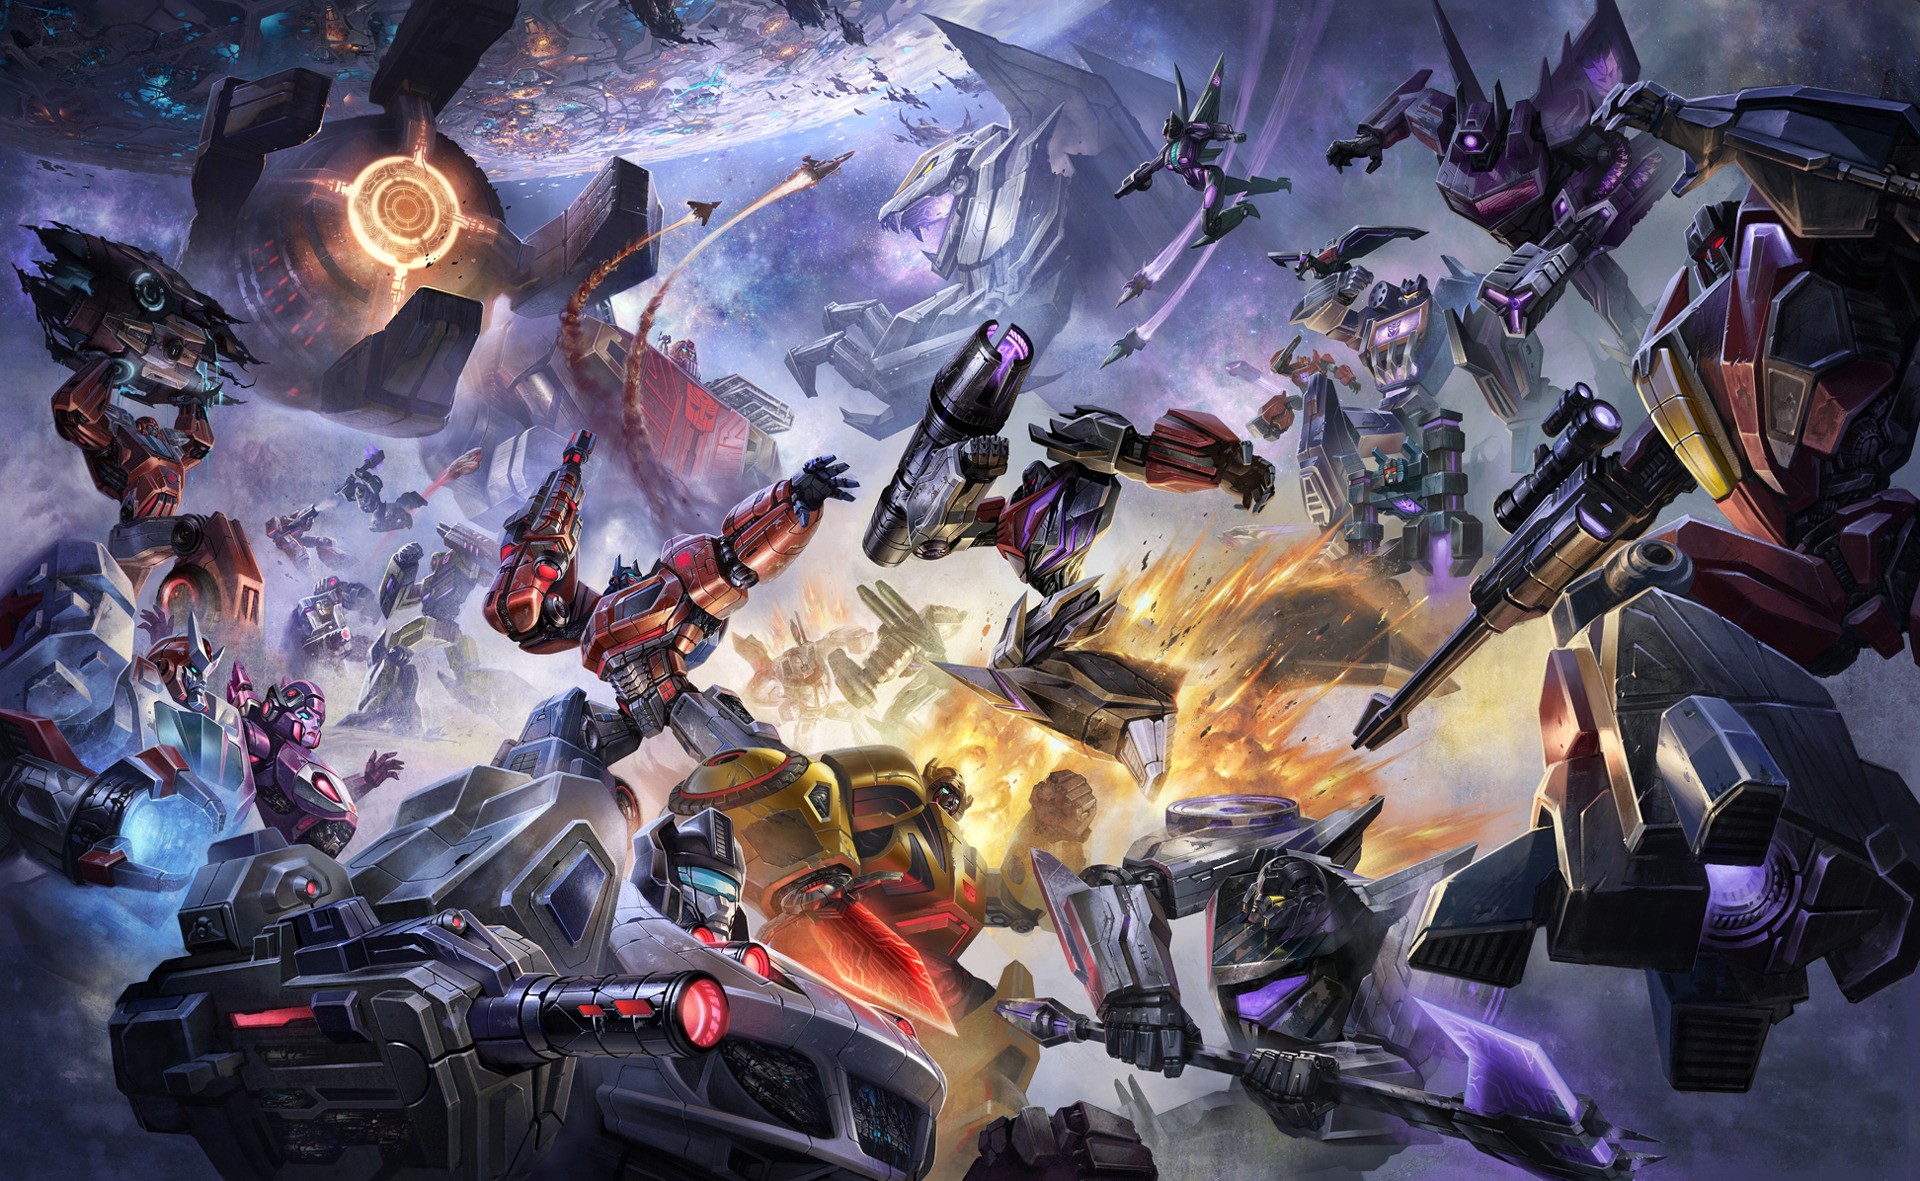 Transformers: Hãy tới với hình ảnh này để khám phá thế giới của những transform robot với sức mạnh phi phàm và những cuộc chiến khốc liệt. Được thiết kế với đường nét tinh tế và sự hiện đại, các Transformers sẽ đưa bạn tới một thế giới khác.